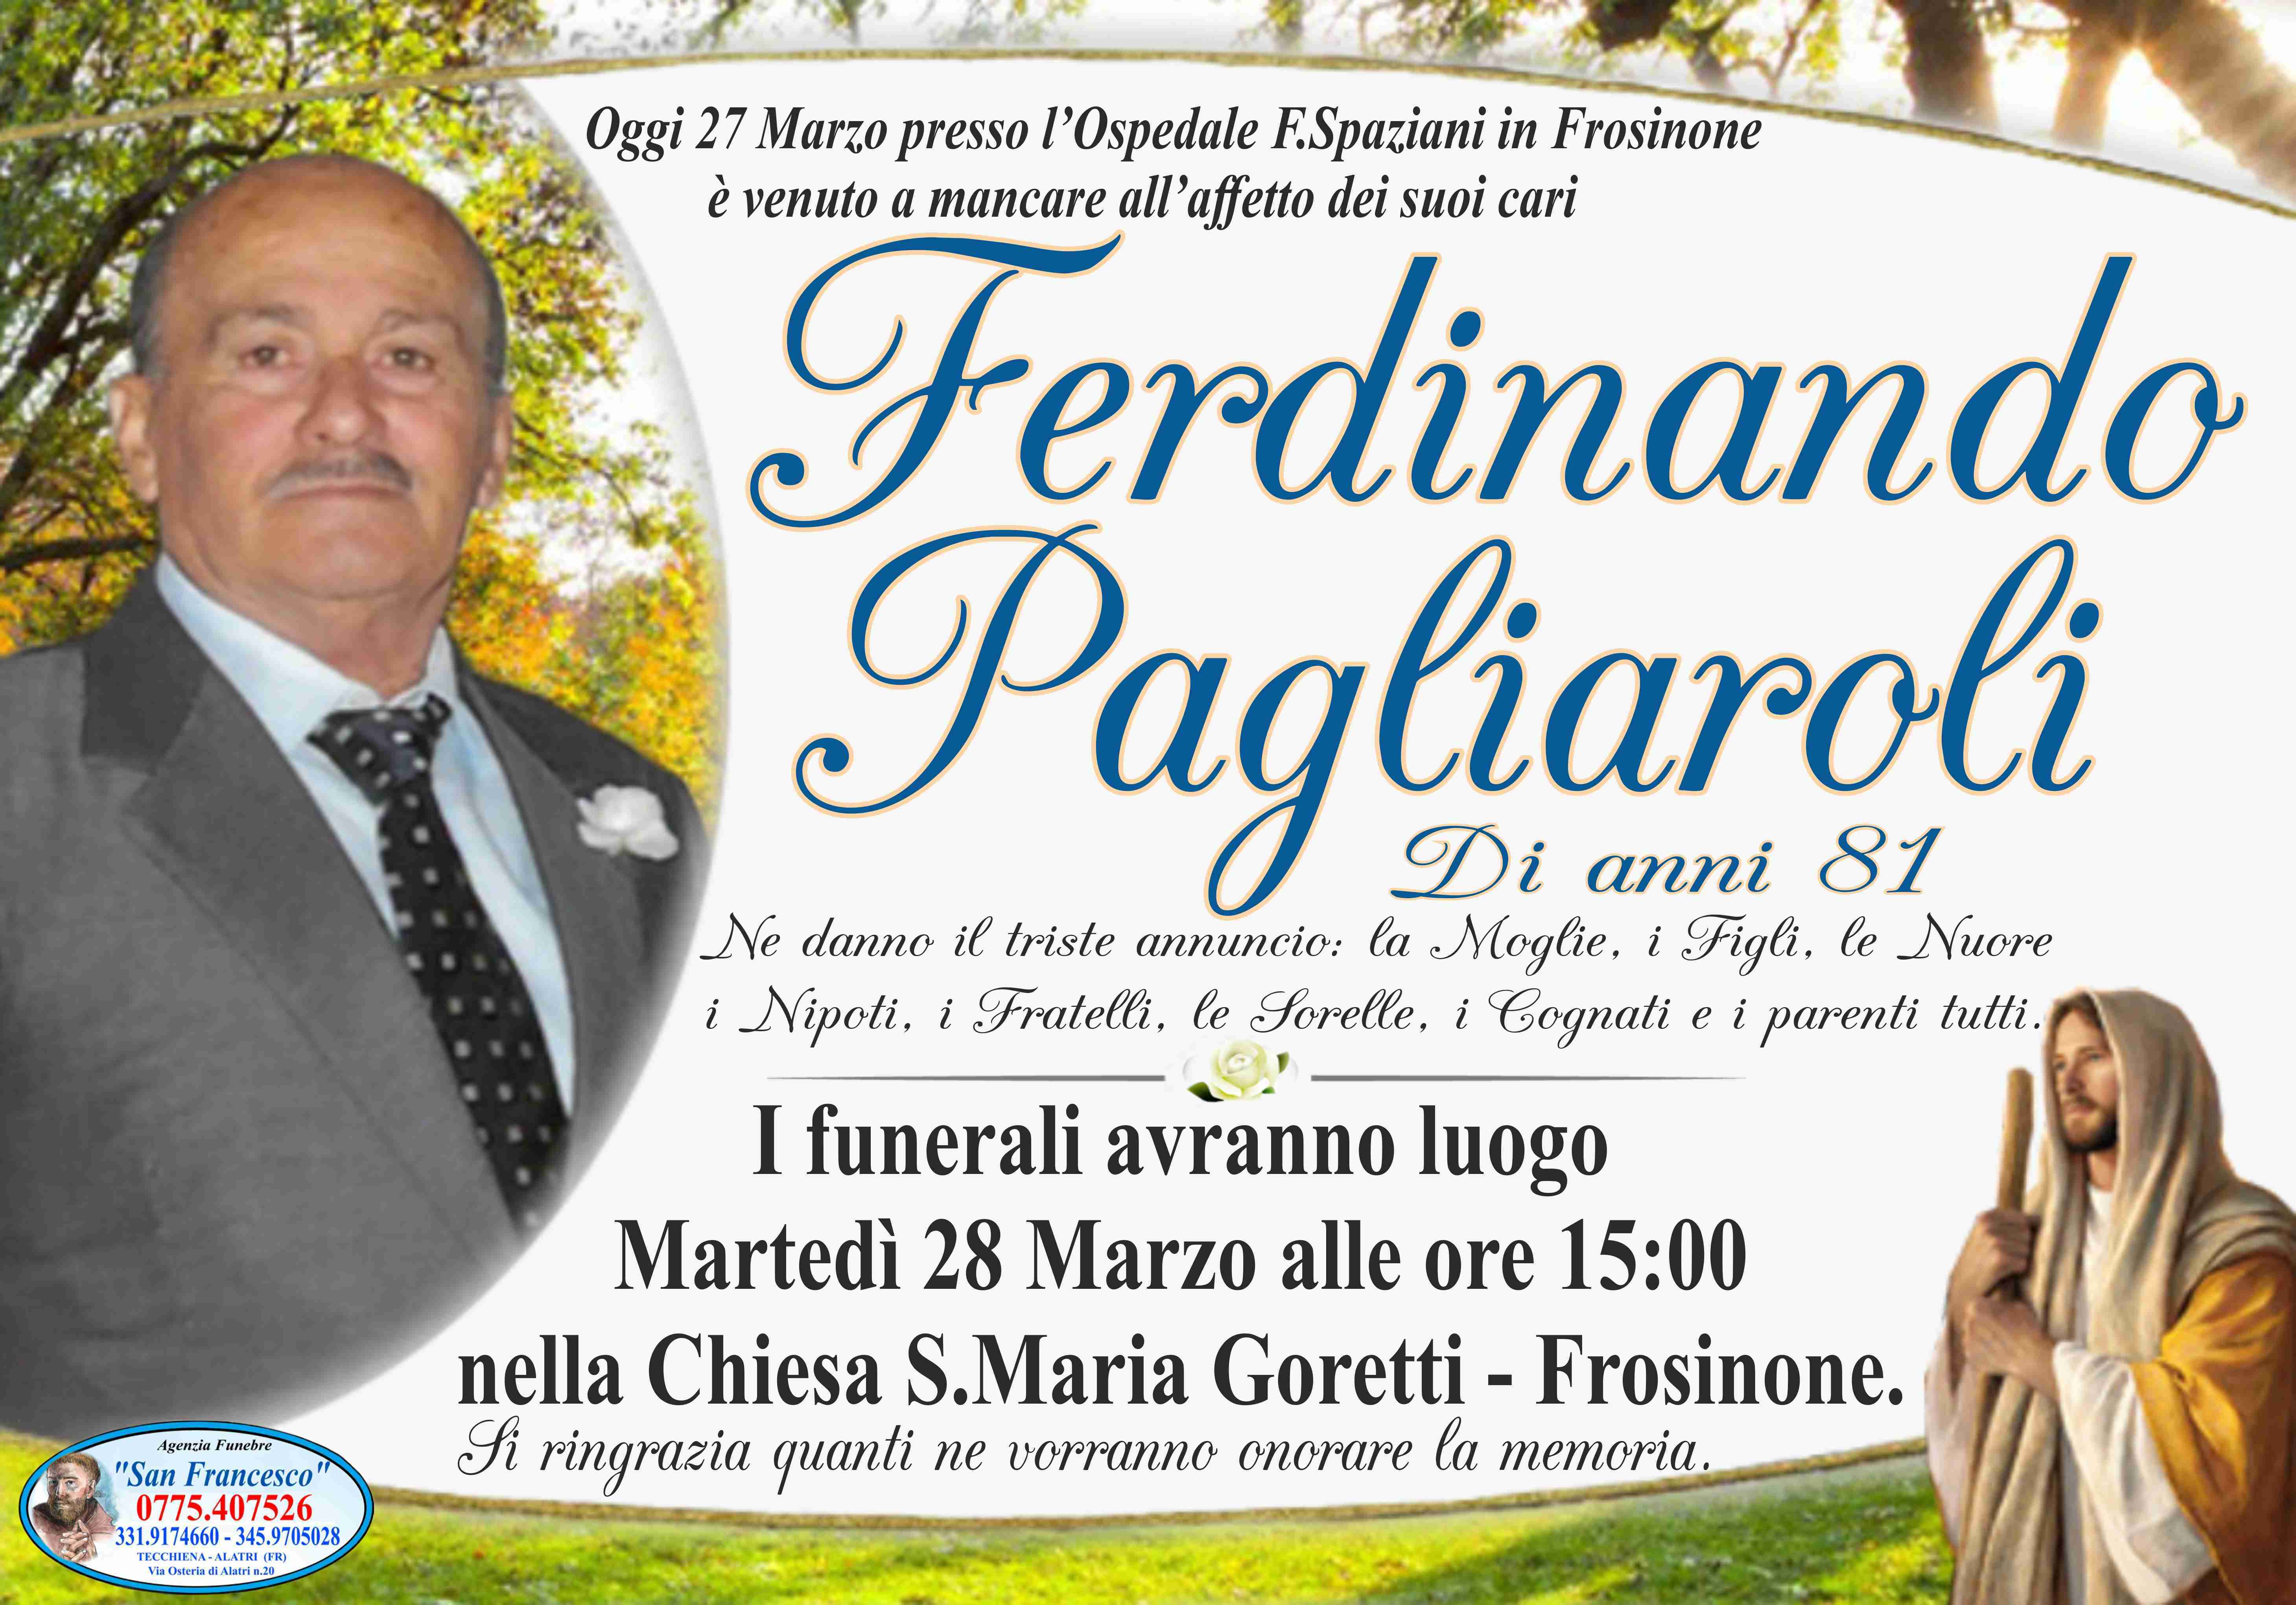 Ferdinando Pagliaroli